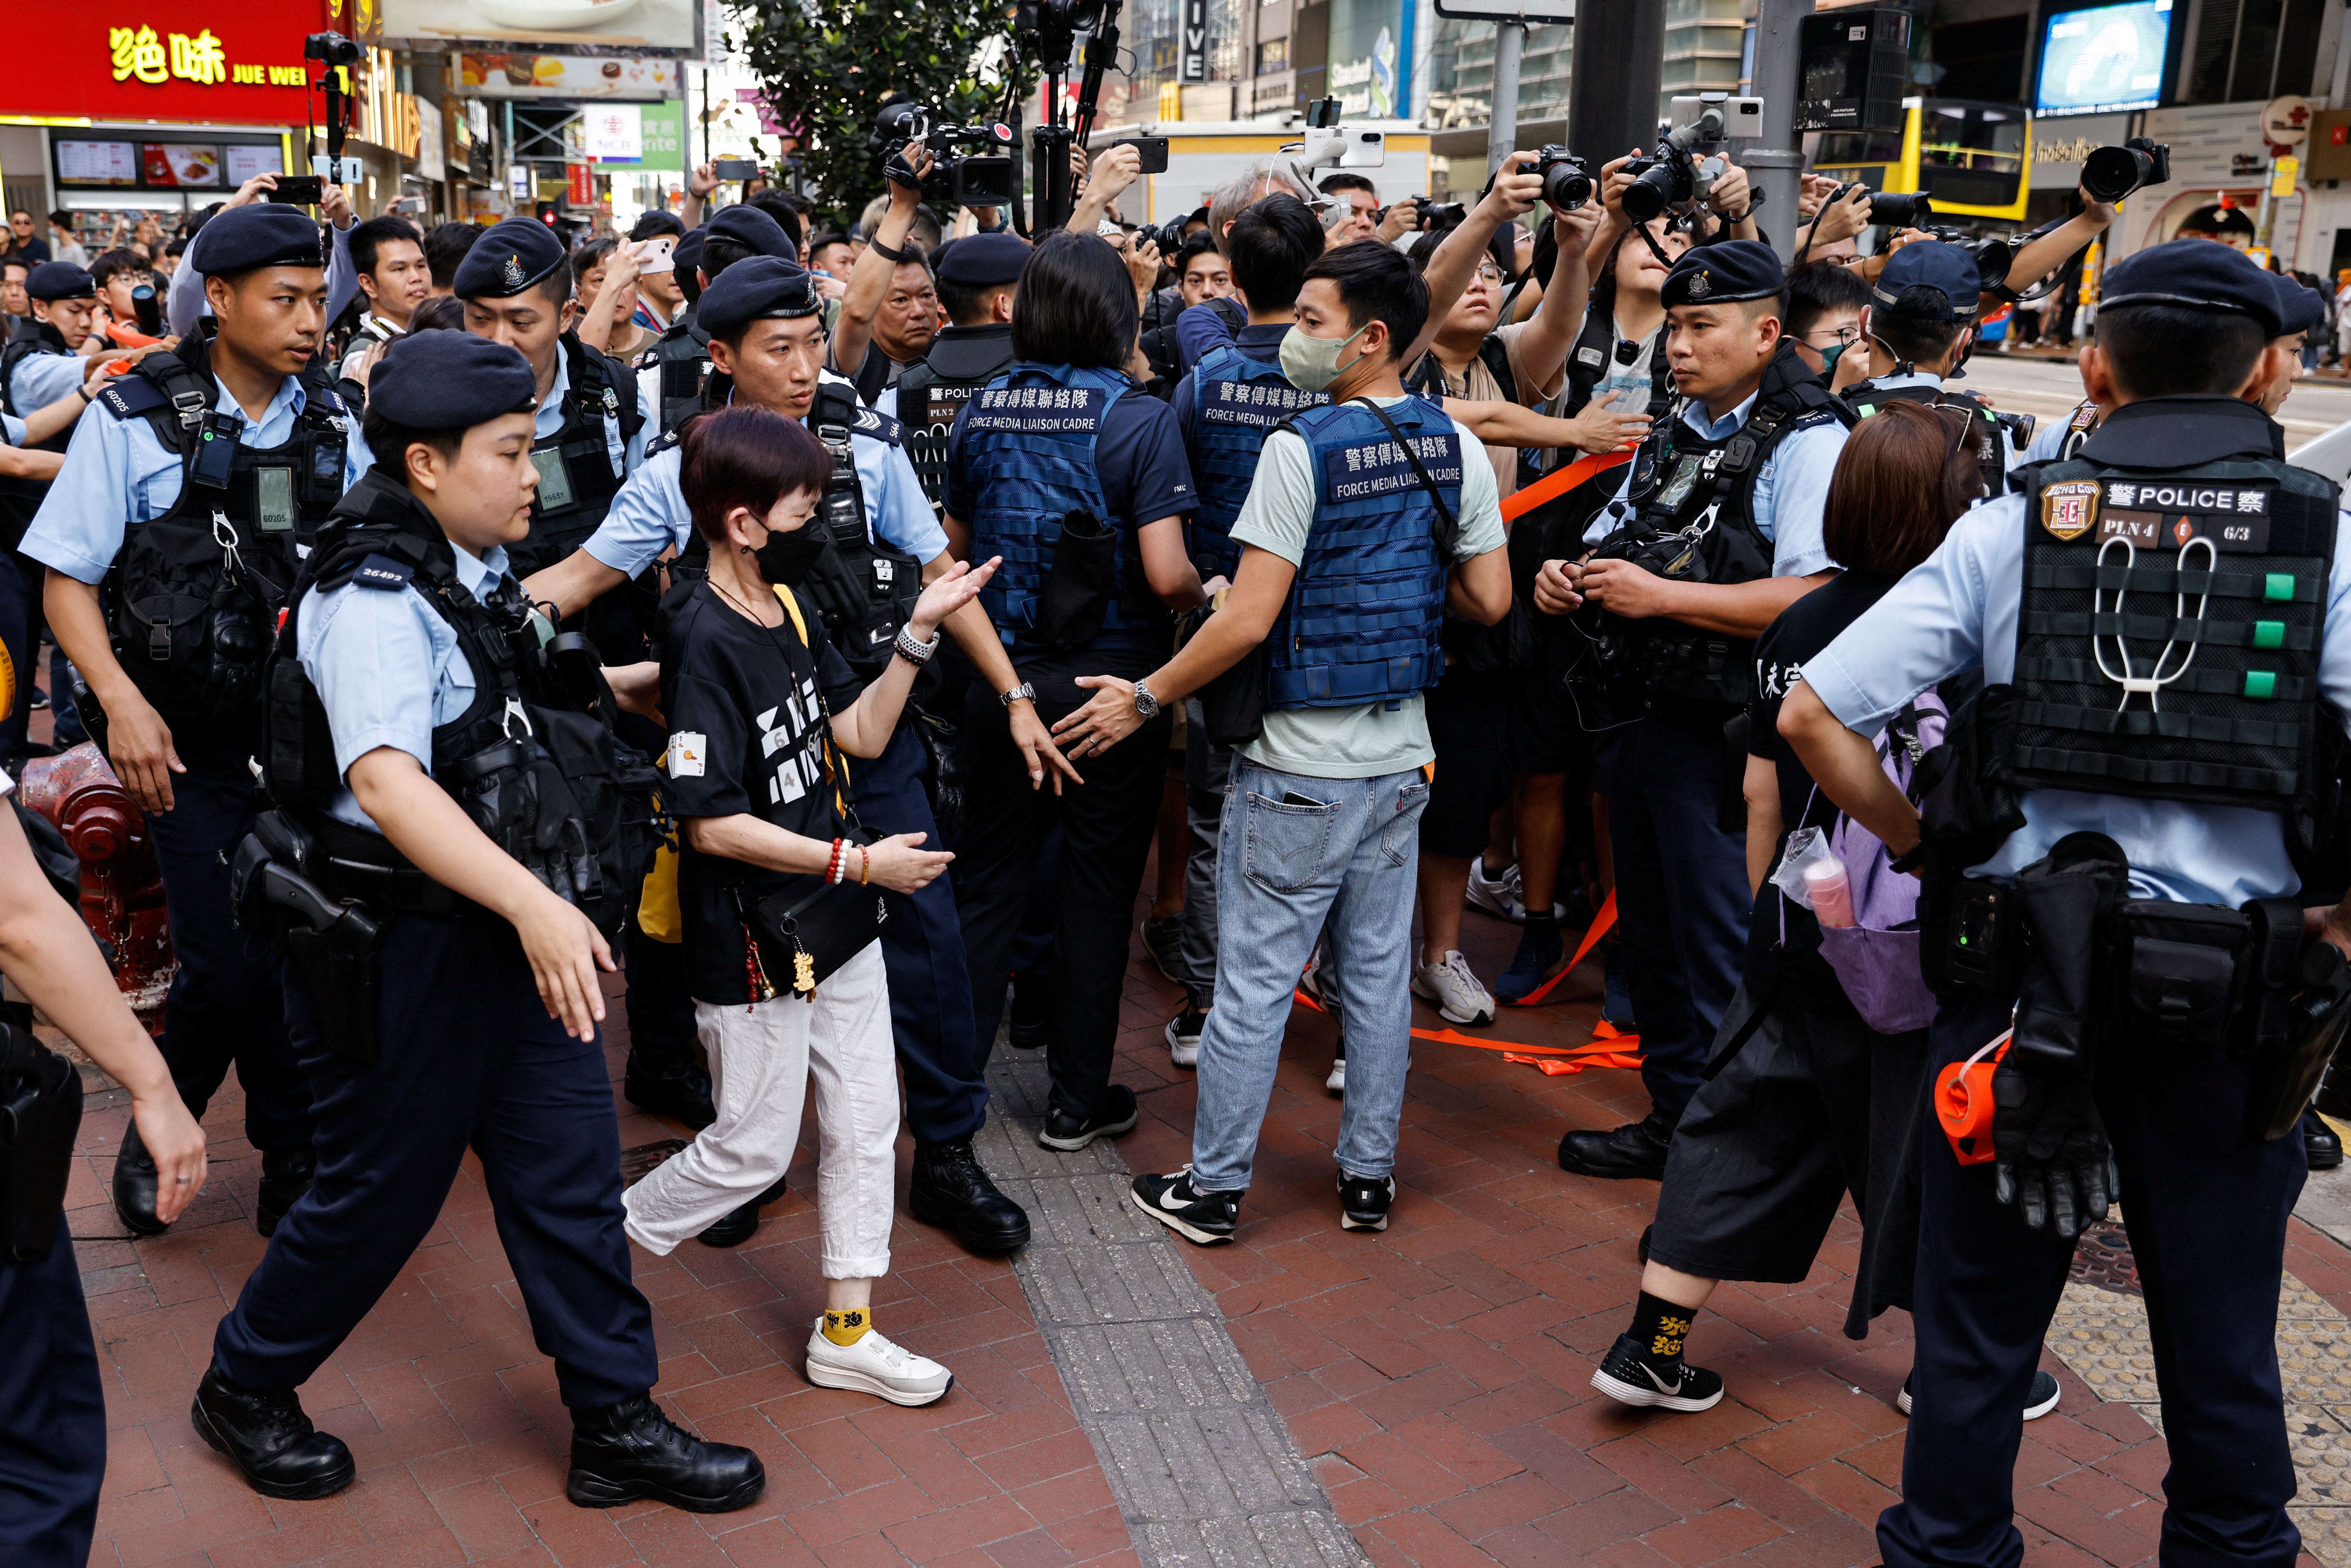 La policía detuvo a varias personas en el centro de la ciudad en el 34º aniversario de la represión de Pekín en 1989 en la plaza de Tiananmen, cerca de donde suele celebrarse la vigilia con velas, en Hong Kong, China, el 4 de junio de 2023. REUTERS/Tyrone Siu